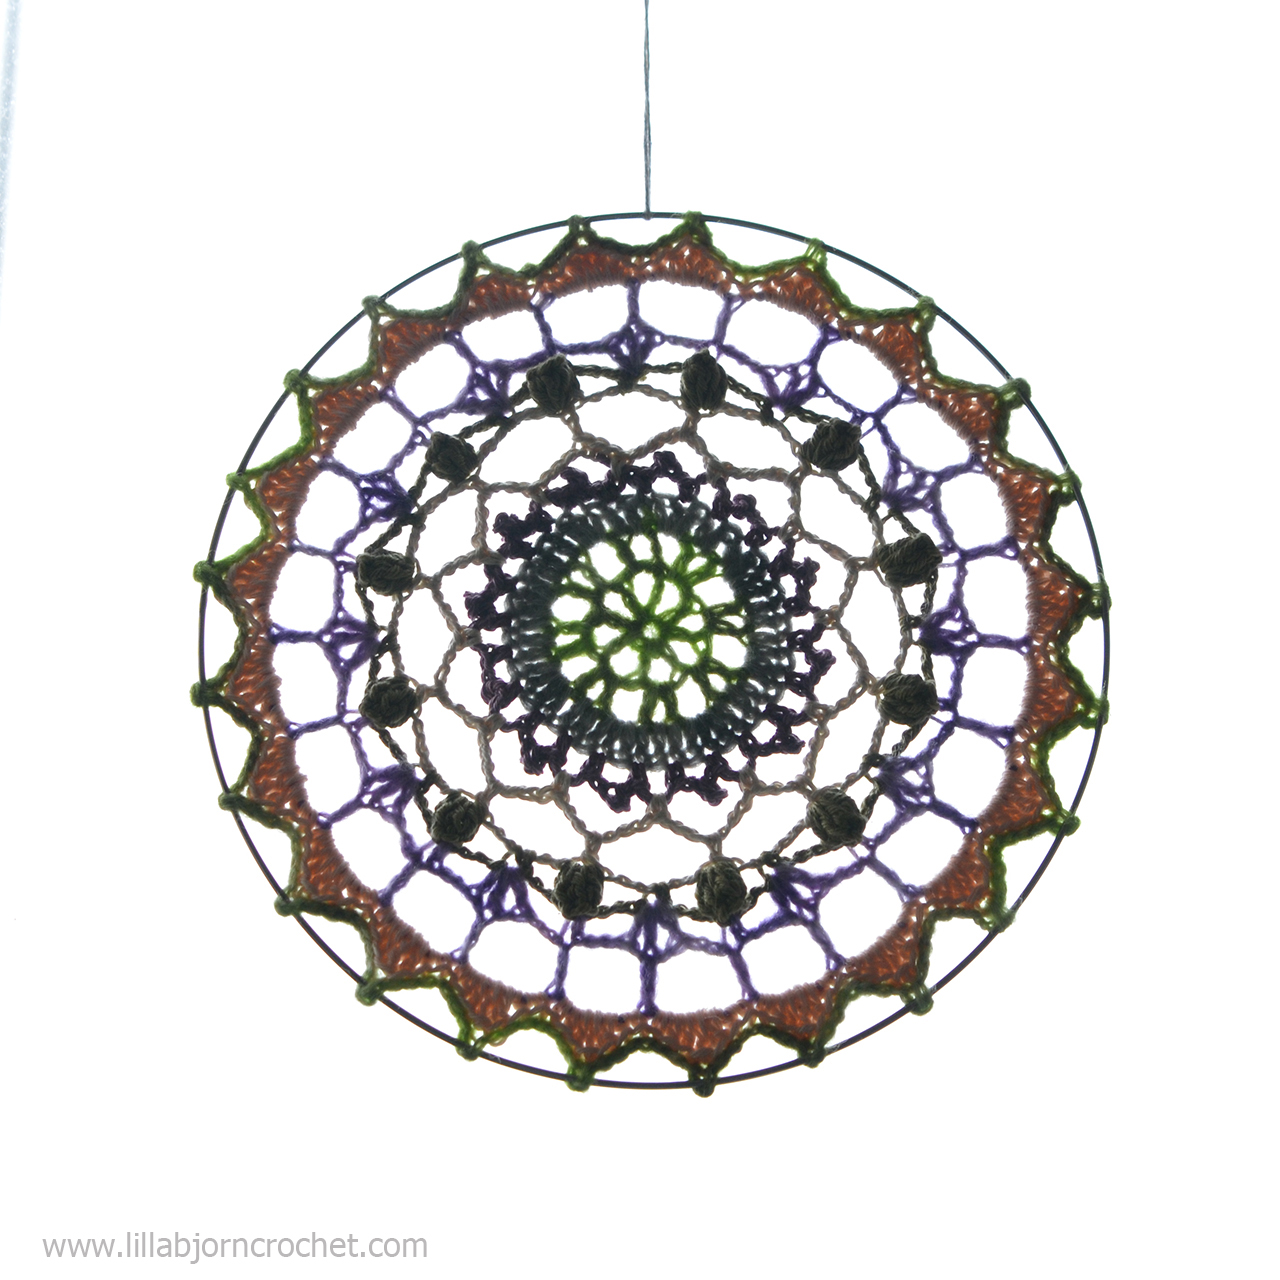 Spirit Mandala wall hanging - FREE crochet pattern by www.lillabjorncrochet.com